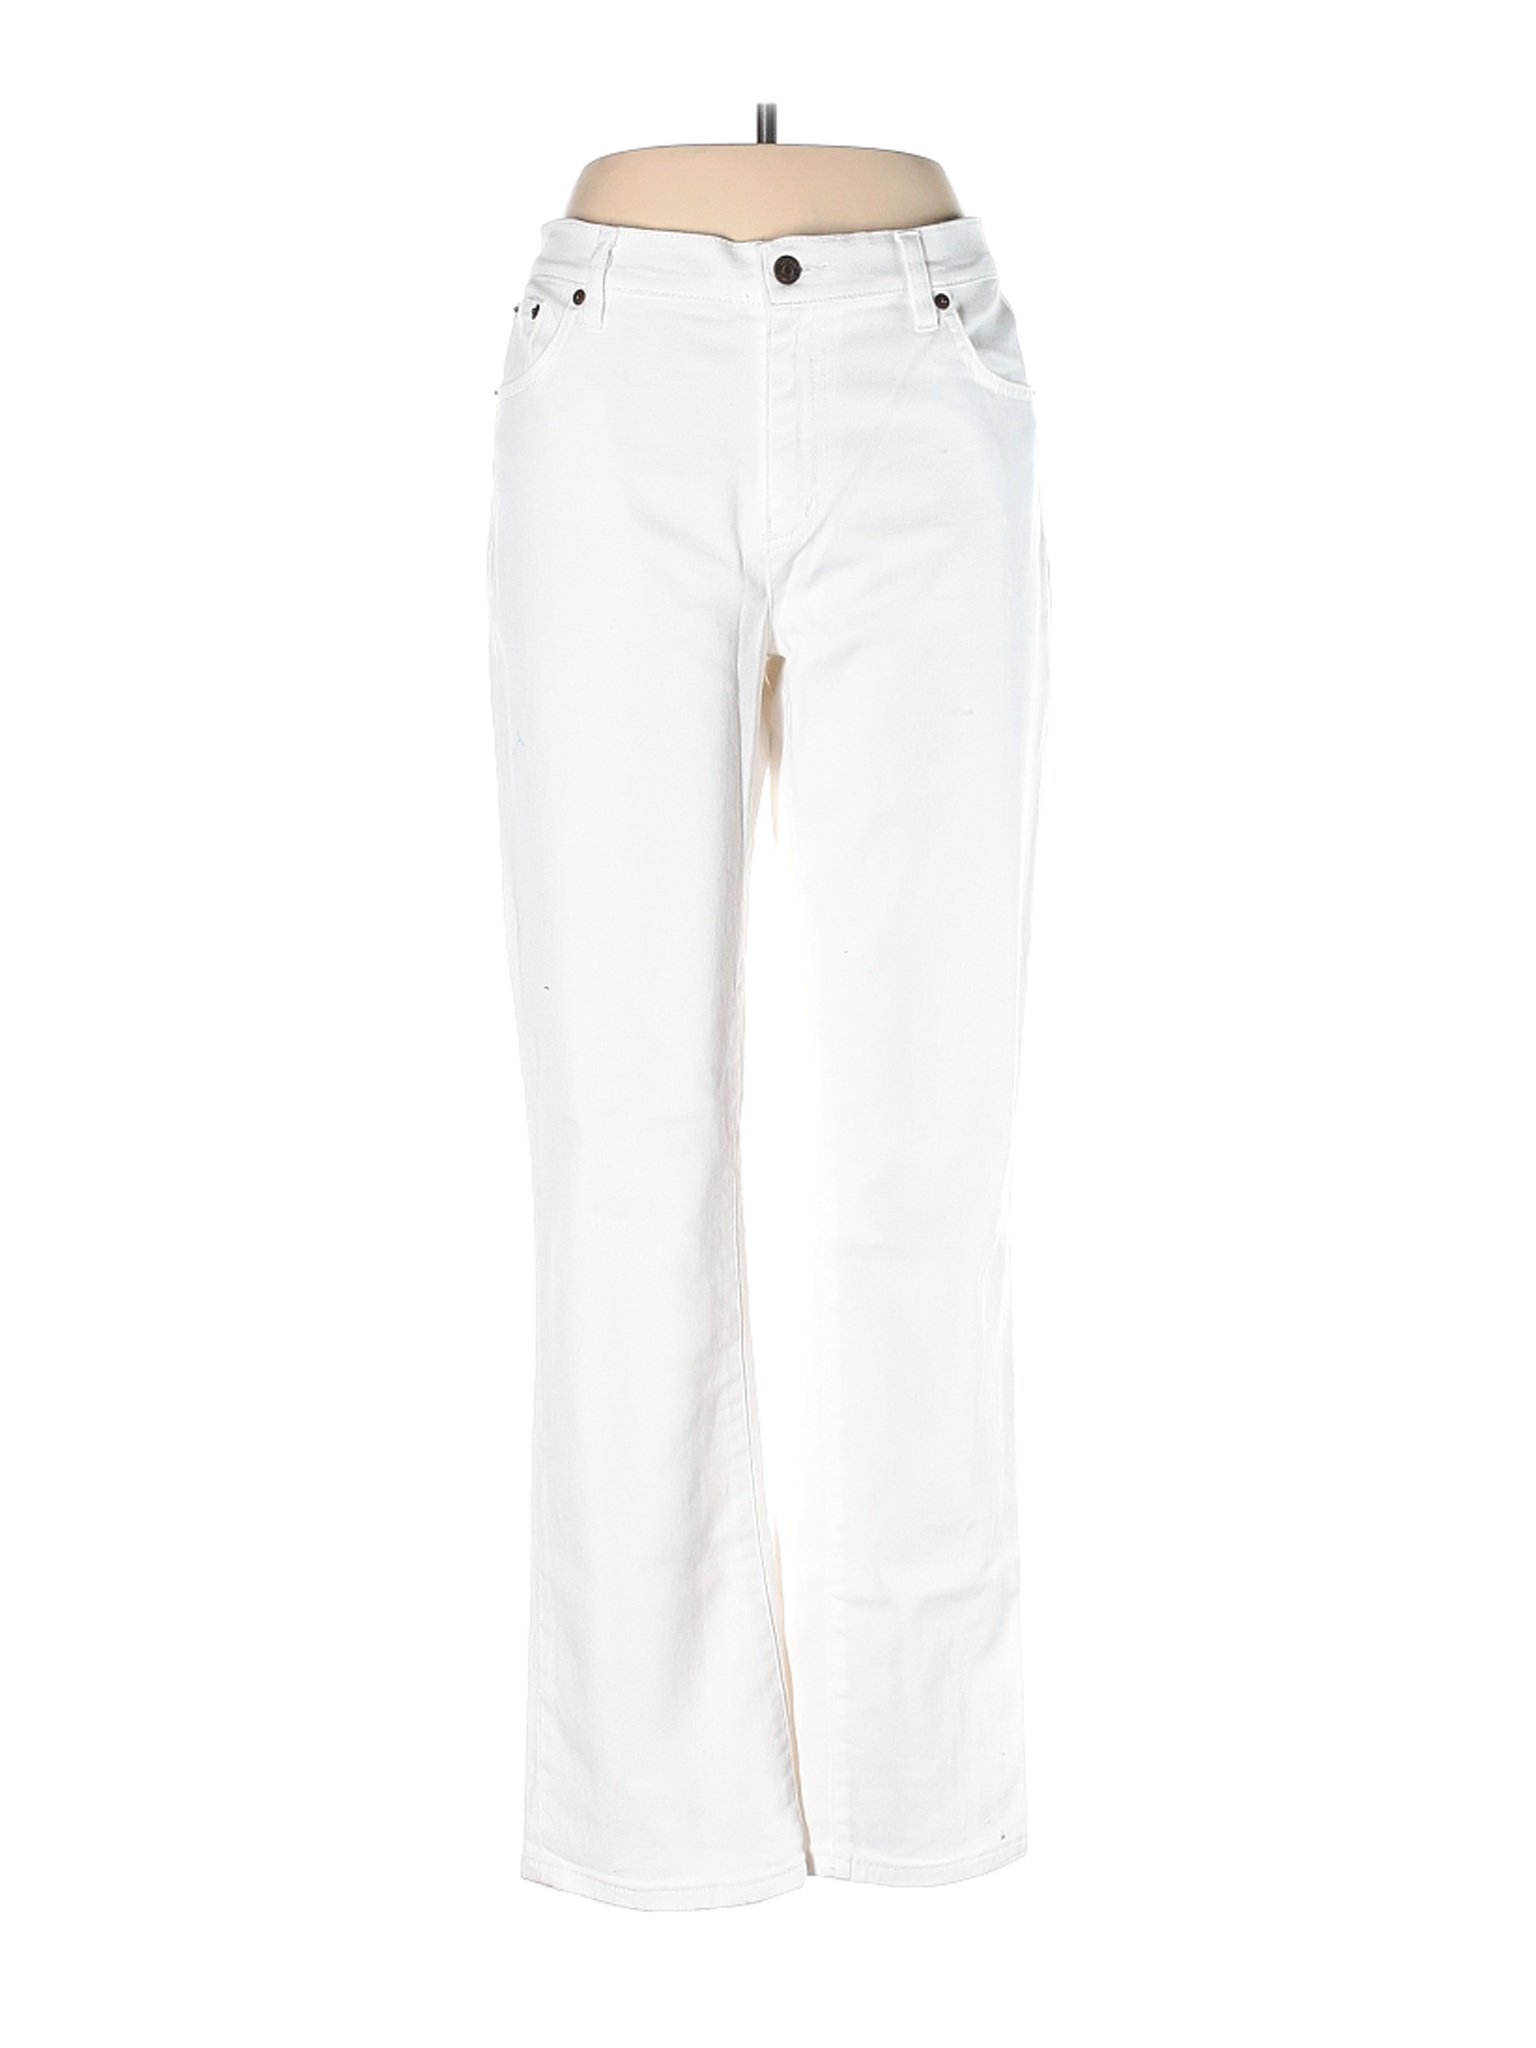 L-RL Lauren Active Ralph Lauren Women White Jeans 12 | eBay